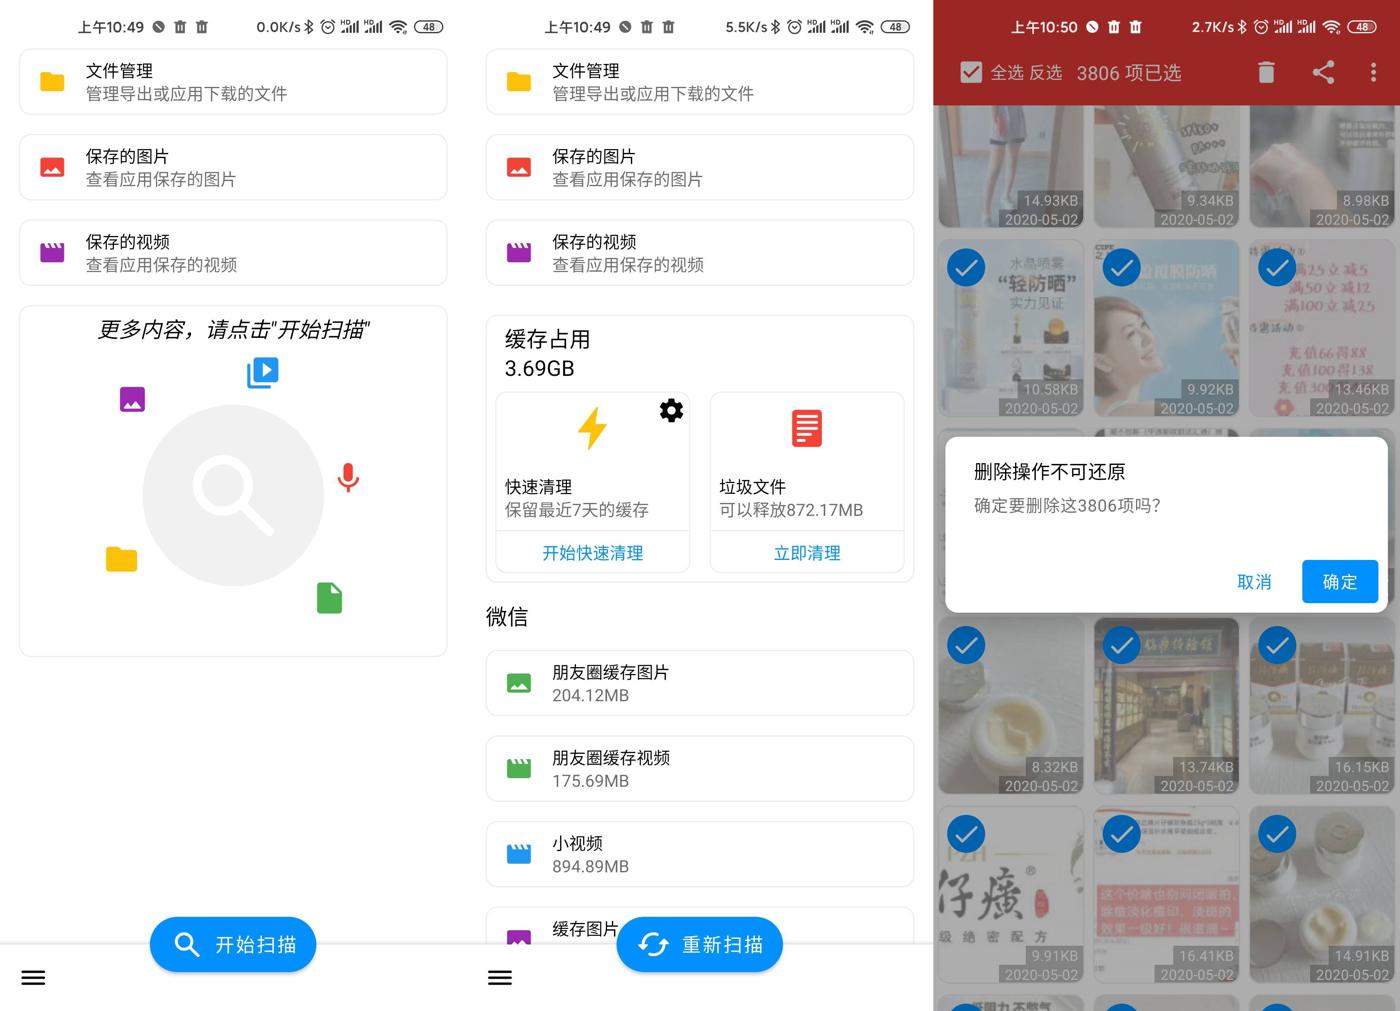 微信WeChat v3.9.5.65 绿色版 支持多开消息防撤回功能